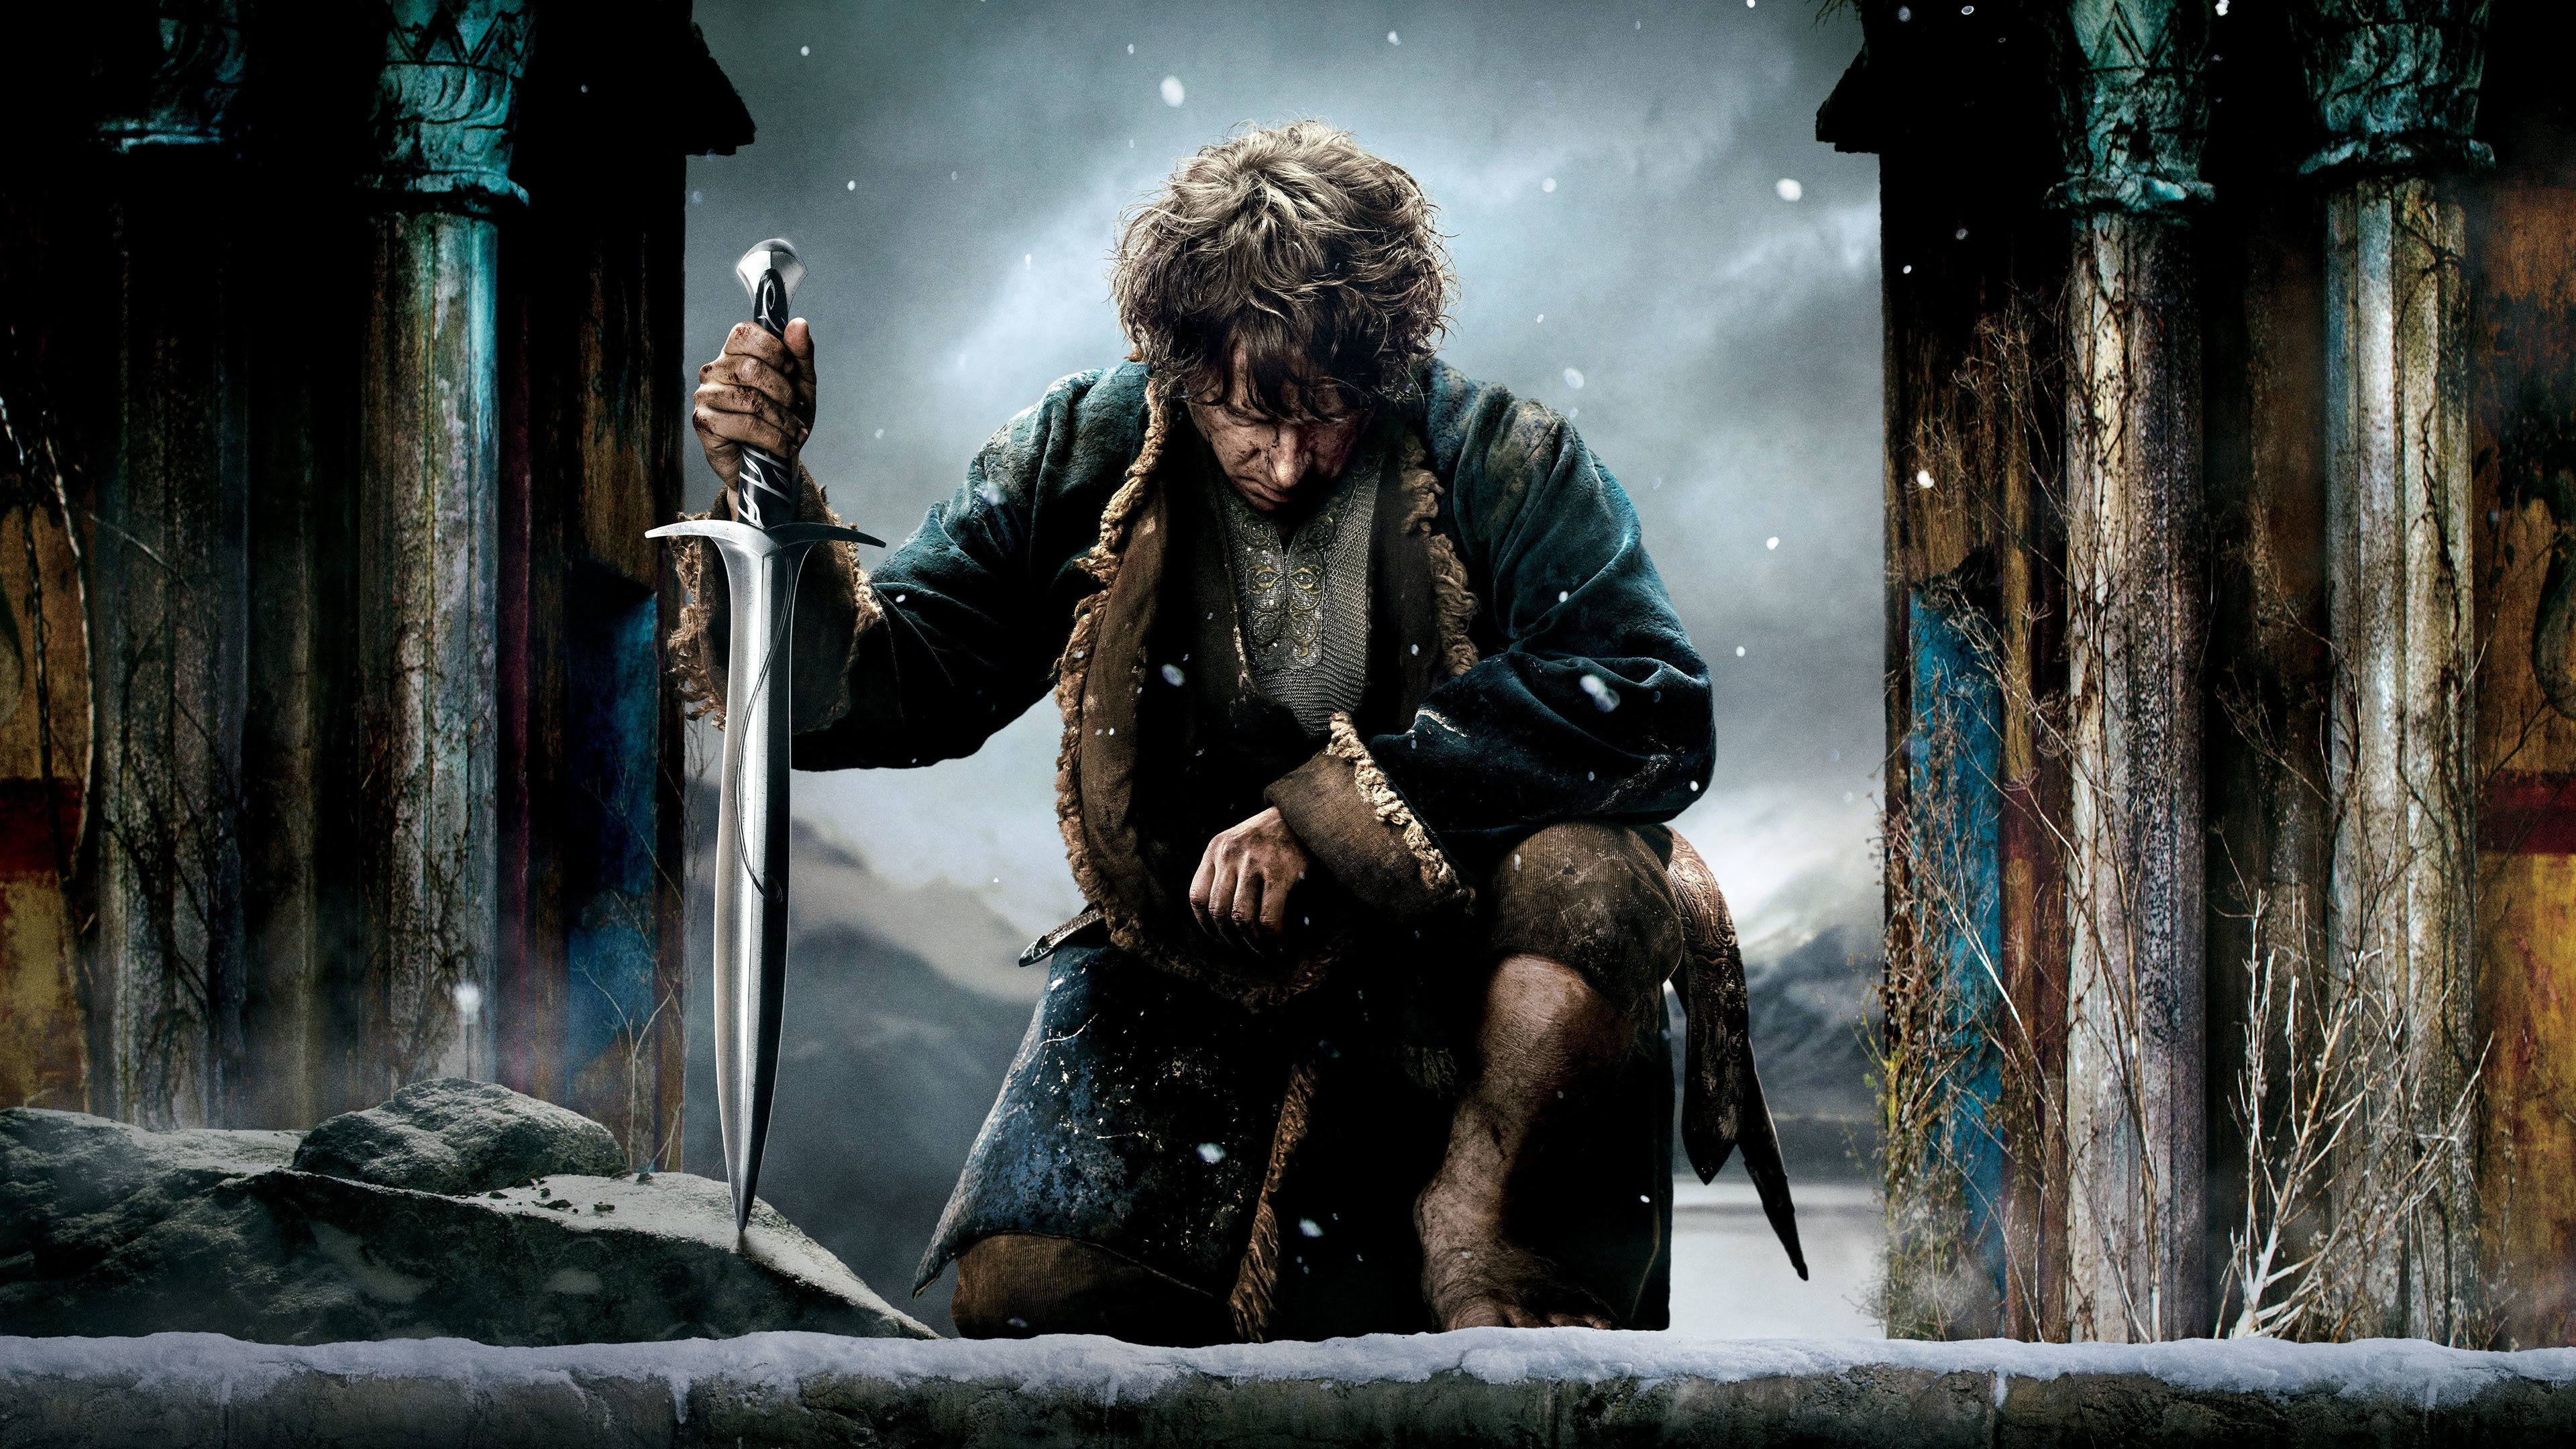 Battle of the Five Armies, Hobbit movie, 4K wallpaper, Epic battle, 3840x2160 4K Desktop